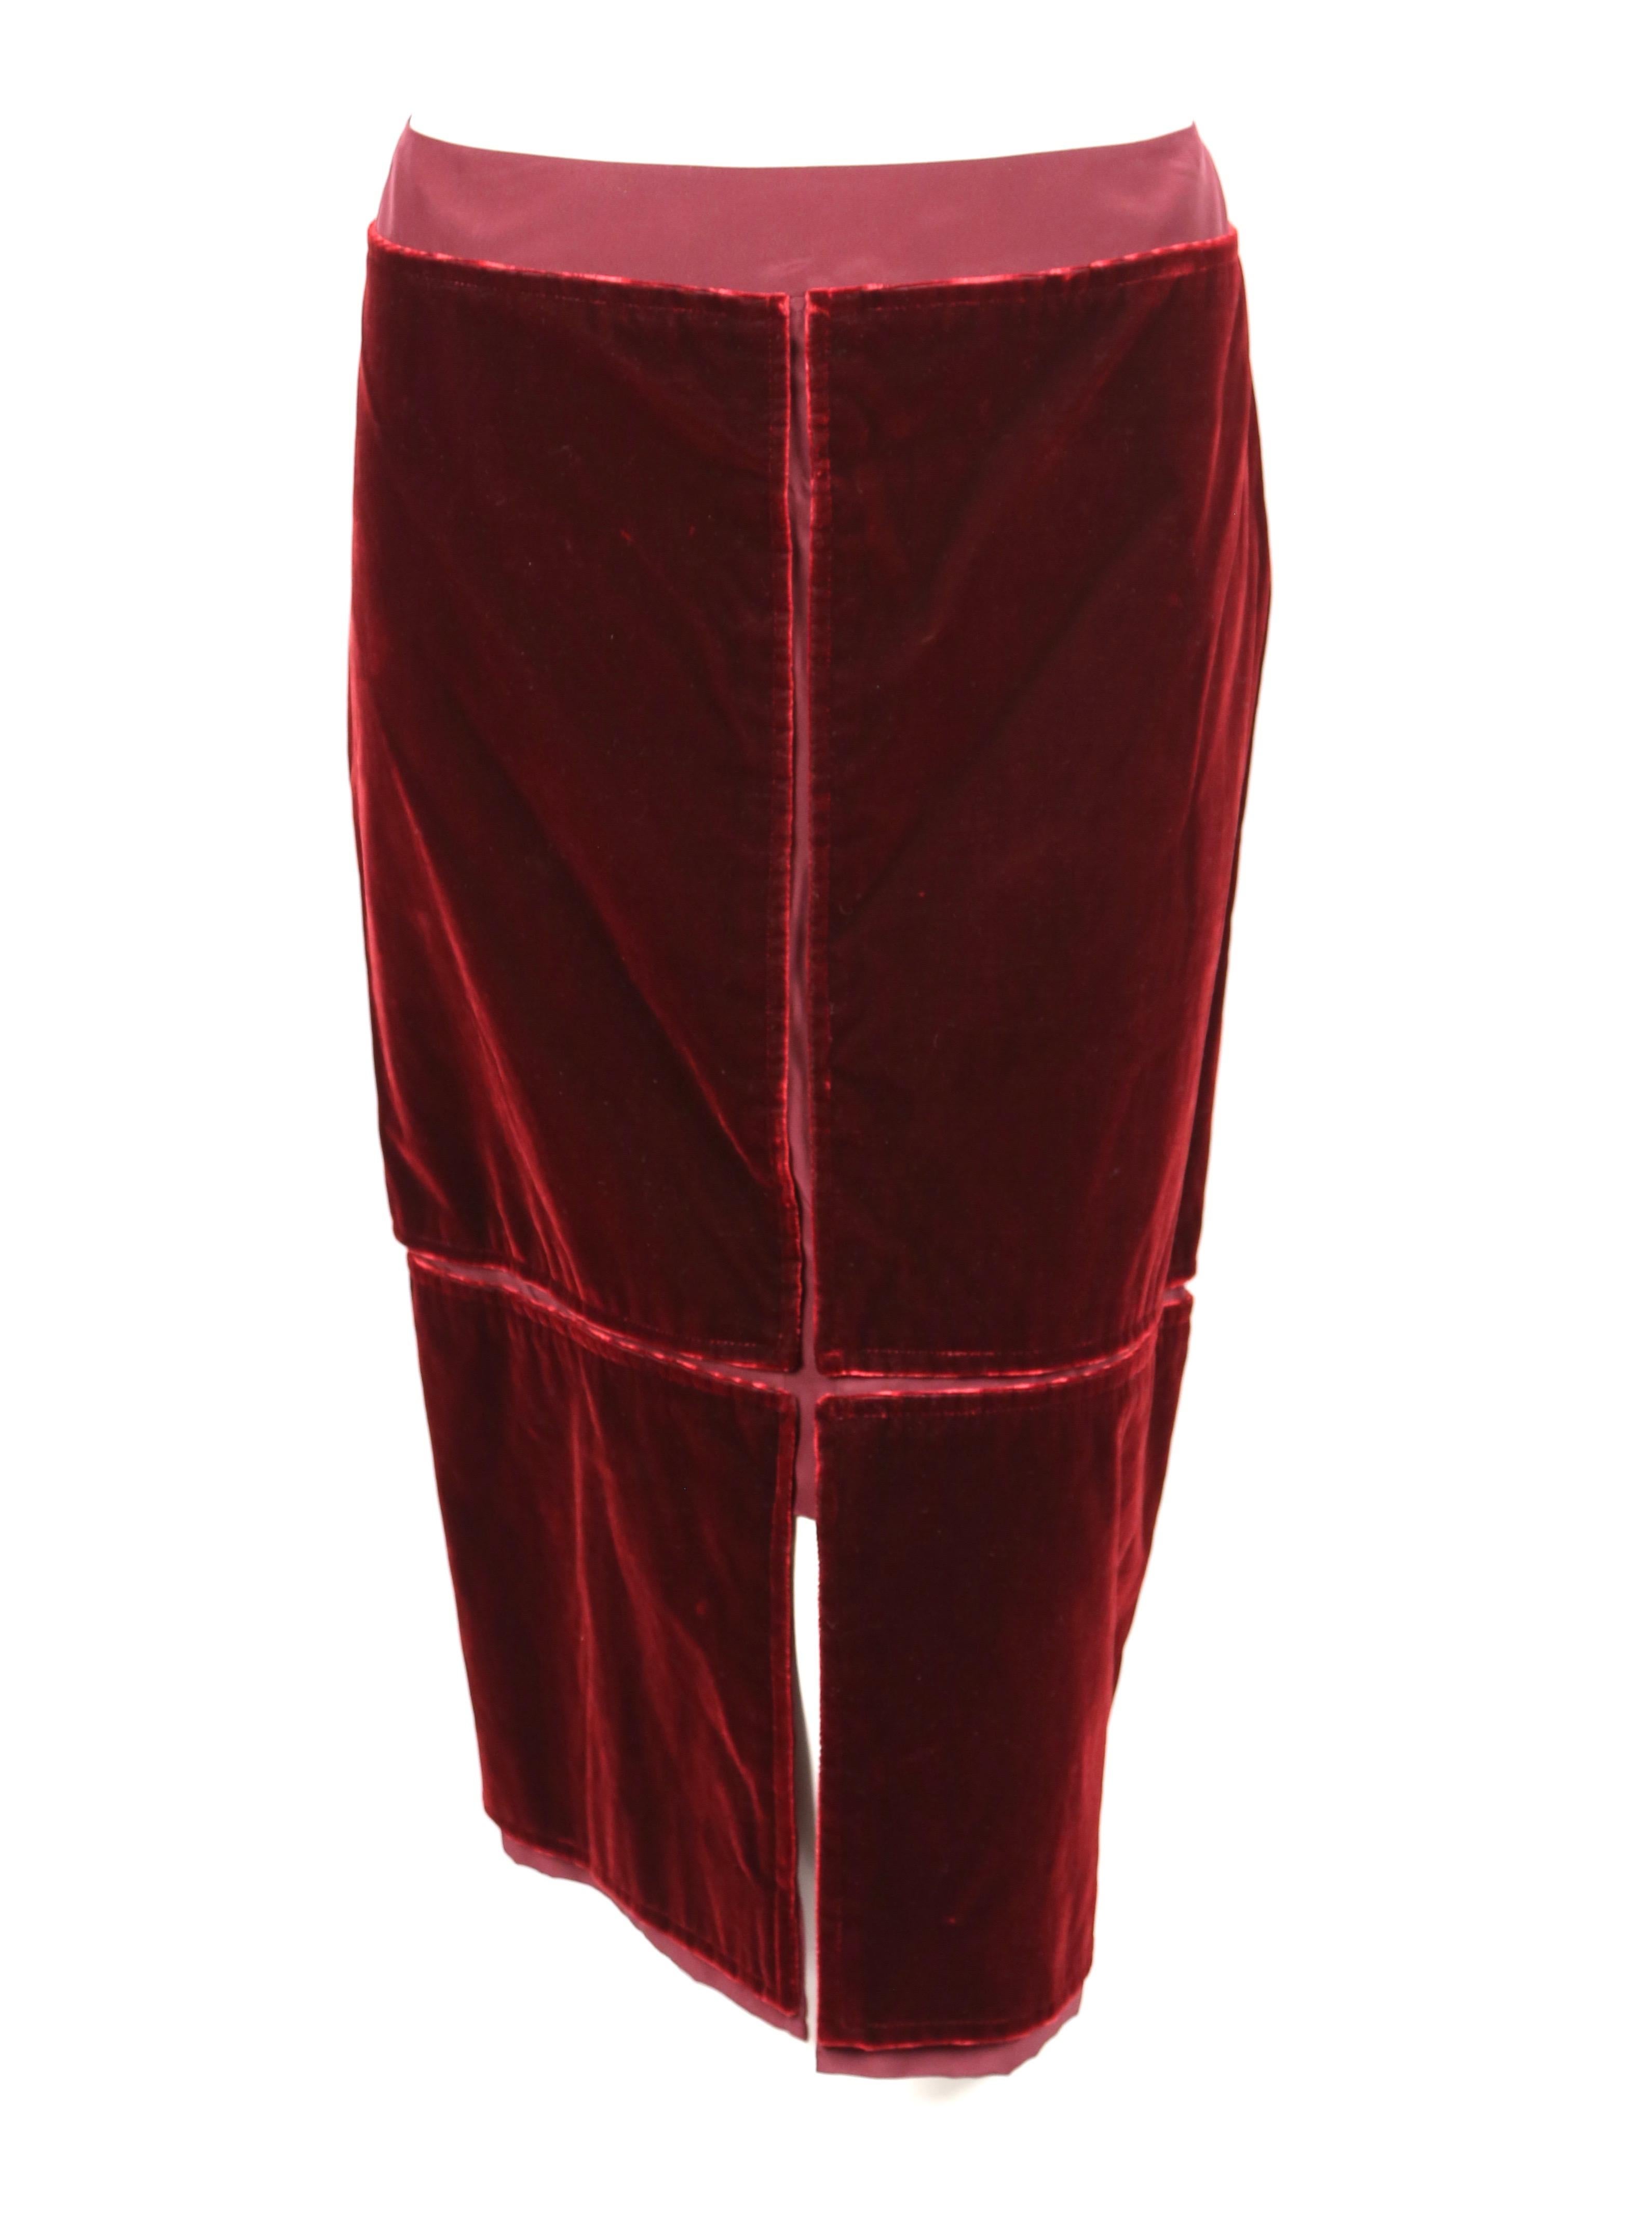 Women's 2002 TOM FORD for YVES SAINT LAURENT burgundy velvet runway suit For Sale